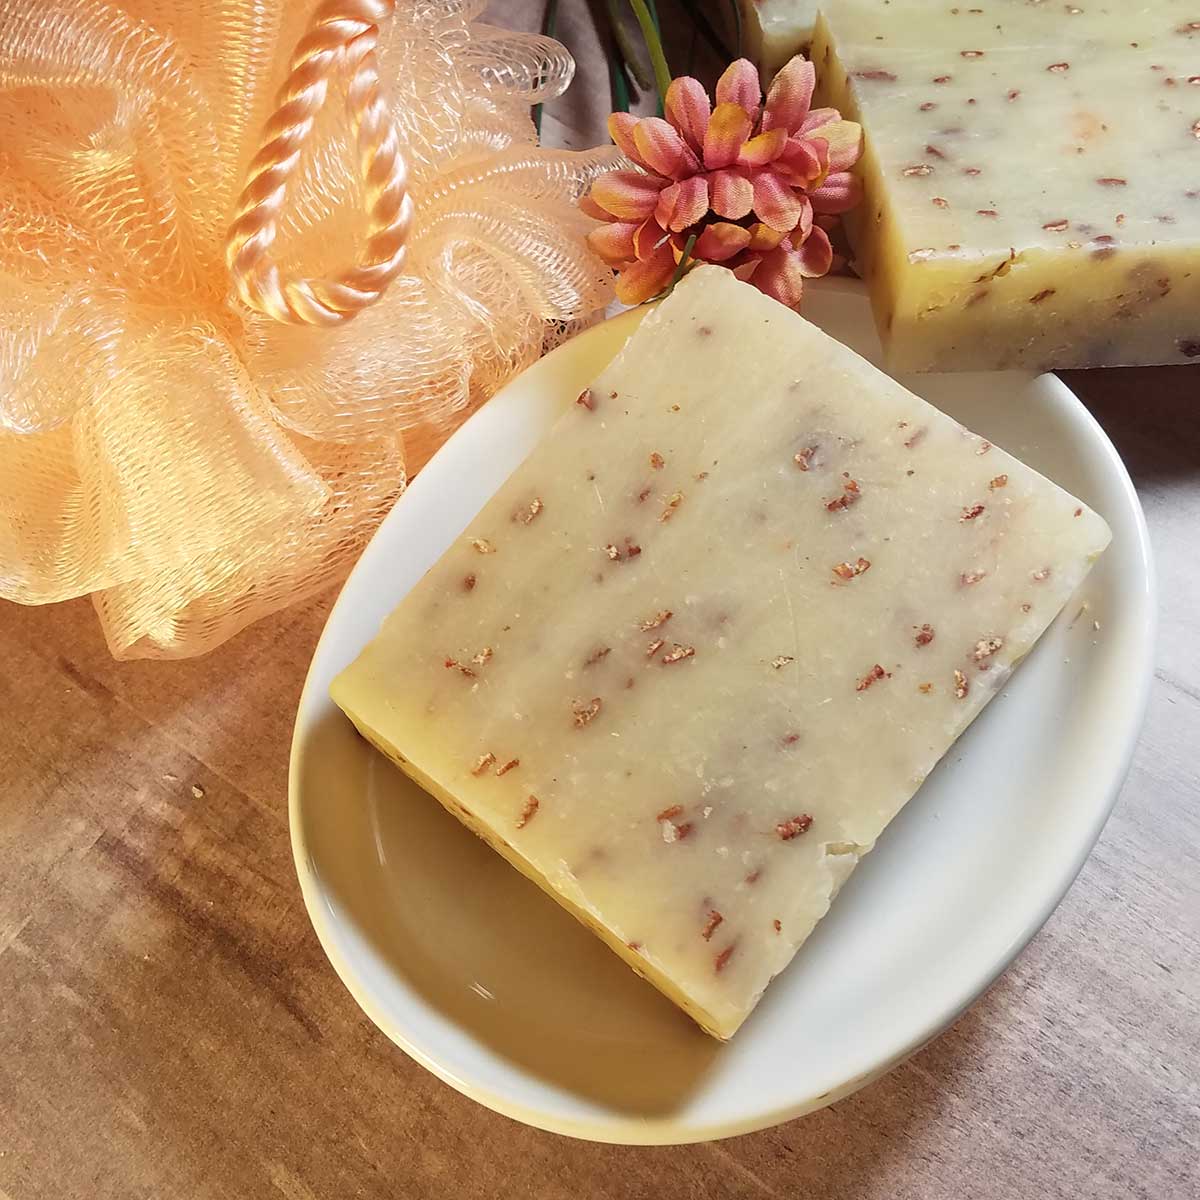 Wildflowers & Oatmeal Handmade Soap - Buck Ridge Soap